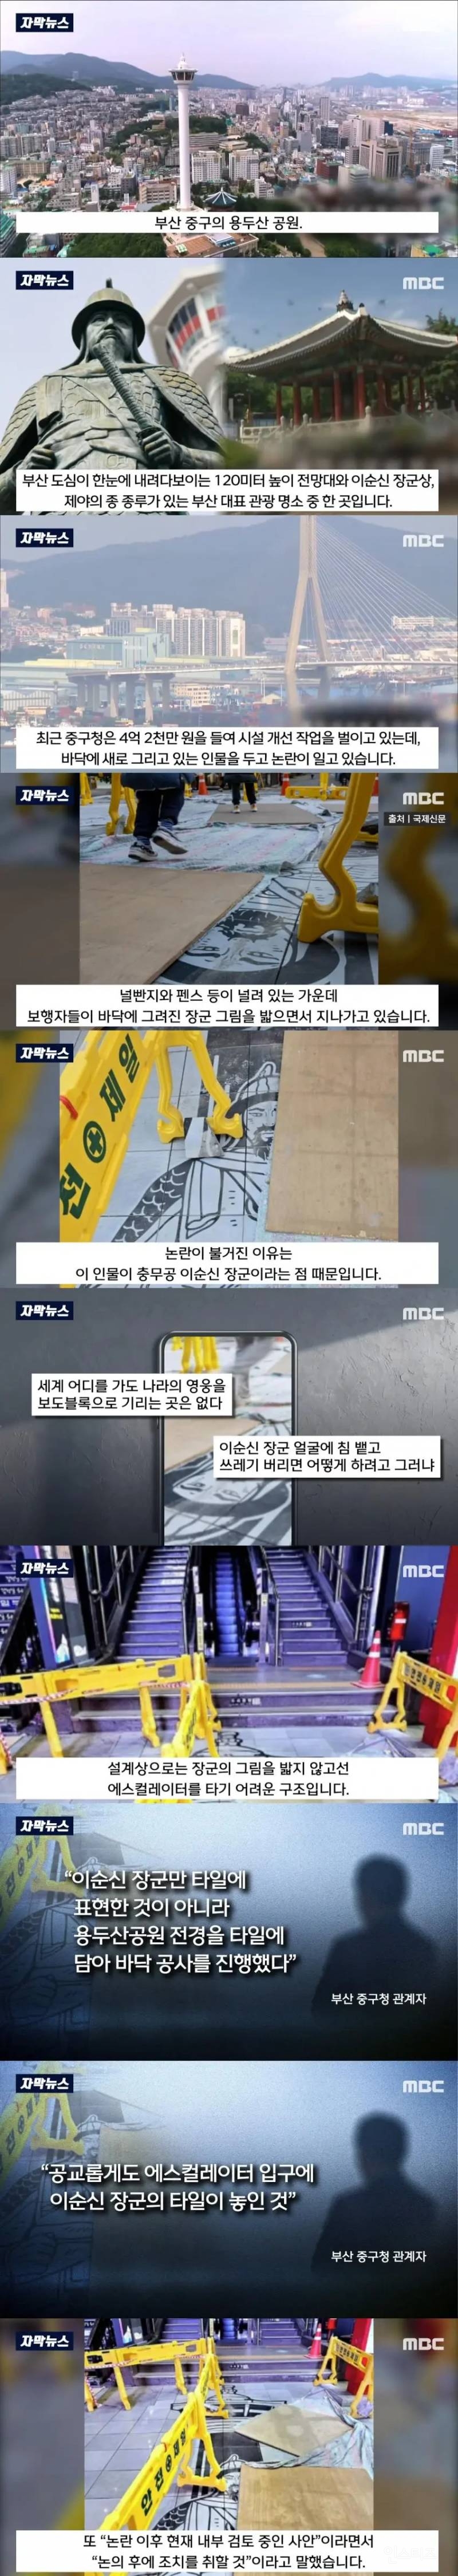 반응 안 좋은 부산광역시 시설 개선 작업 현황 | 인스티즈